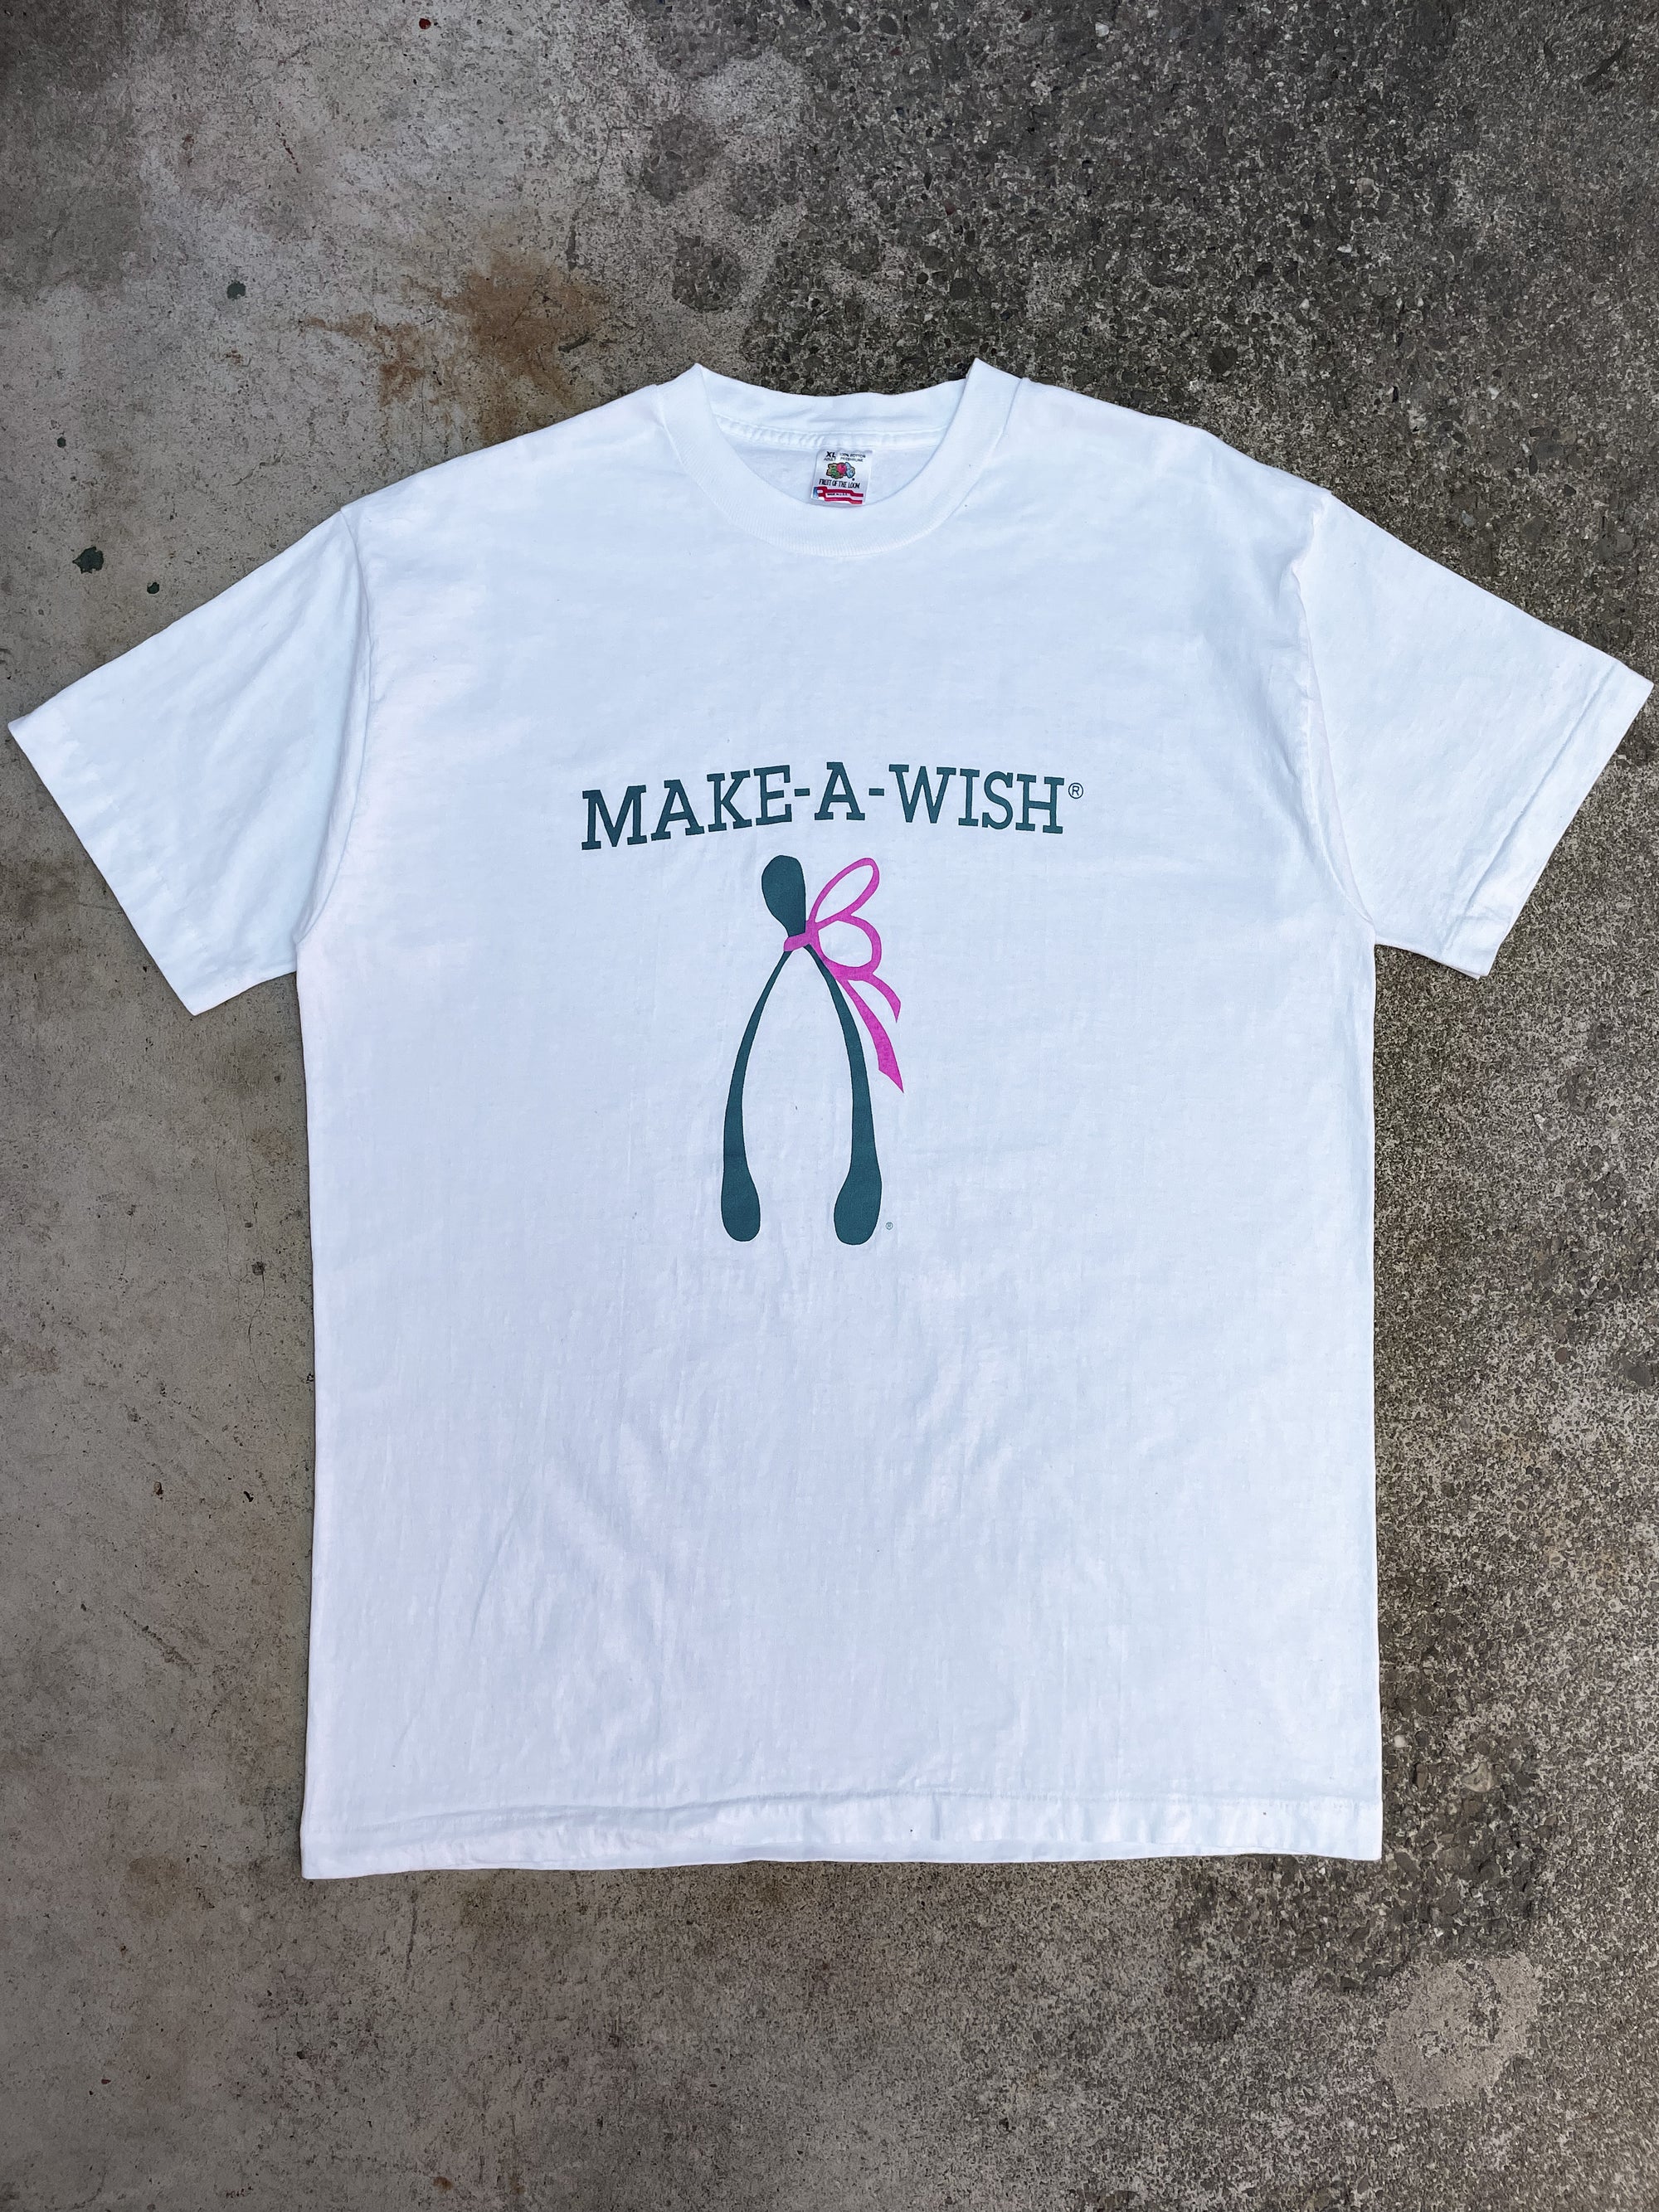 1990s “Make-A-Wish” Tee (XL)